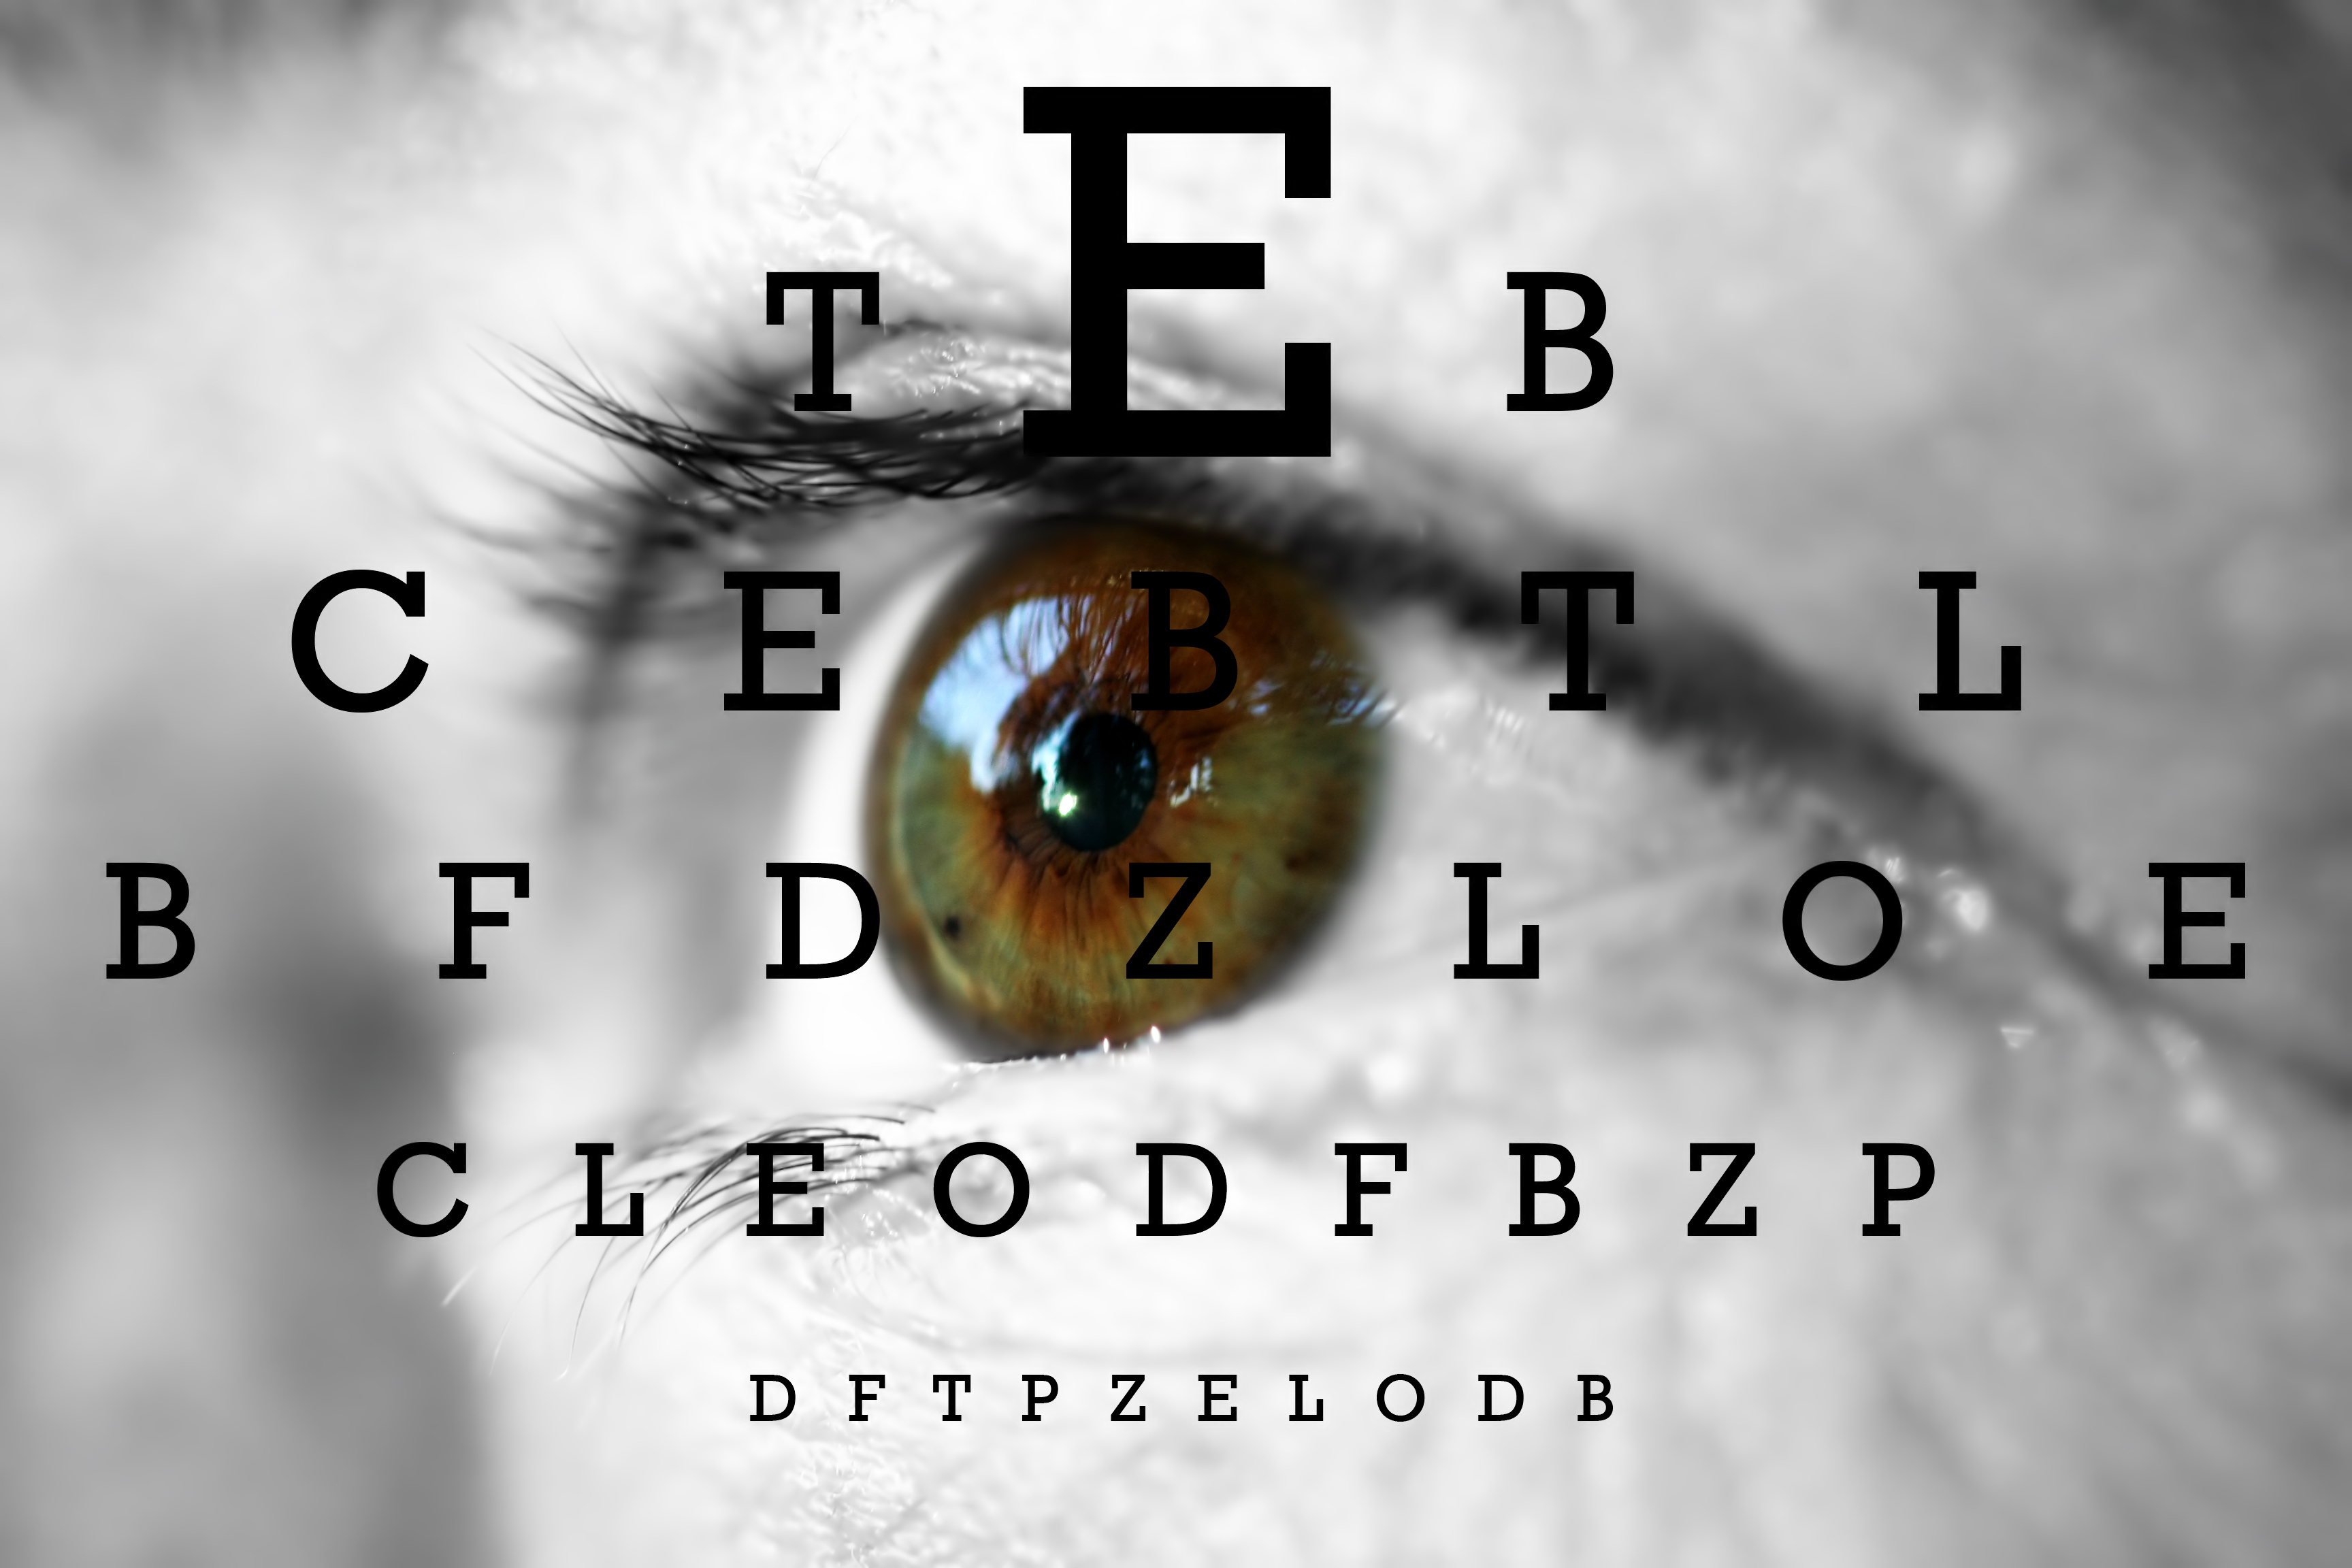 szem előtérben a látásélességet vizsgáló táblára emlékeztető, csökkenő méretű betűkkel